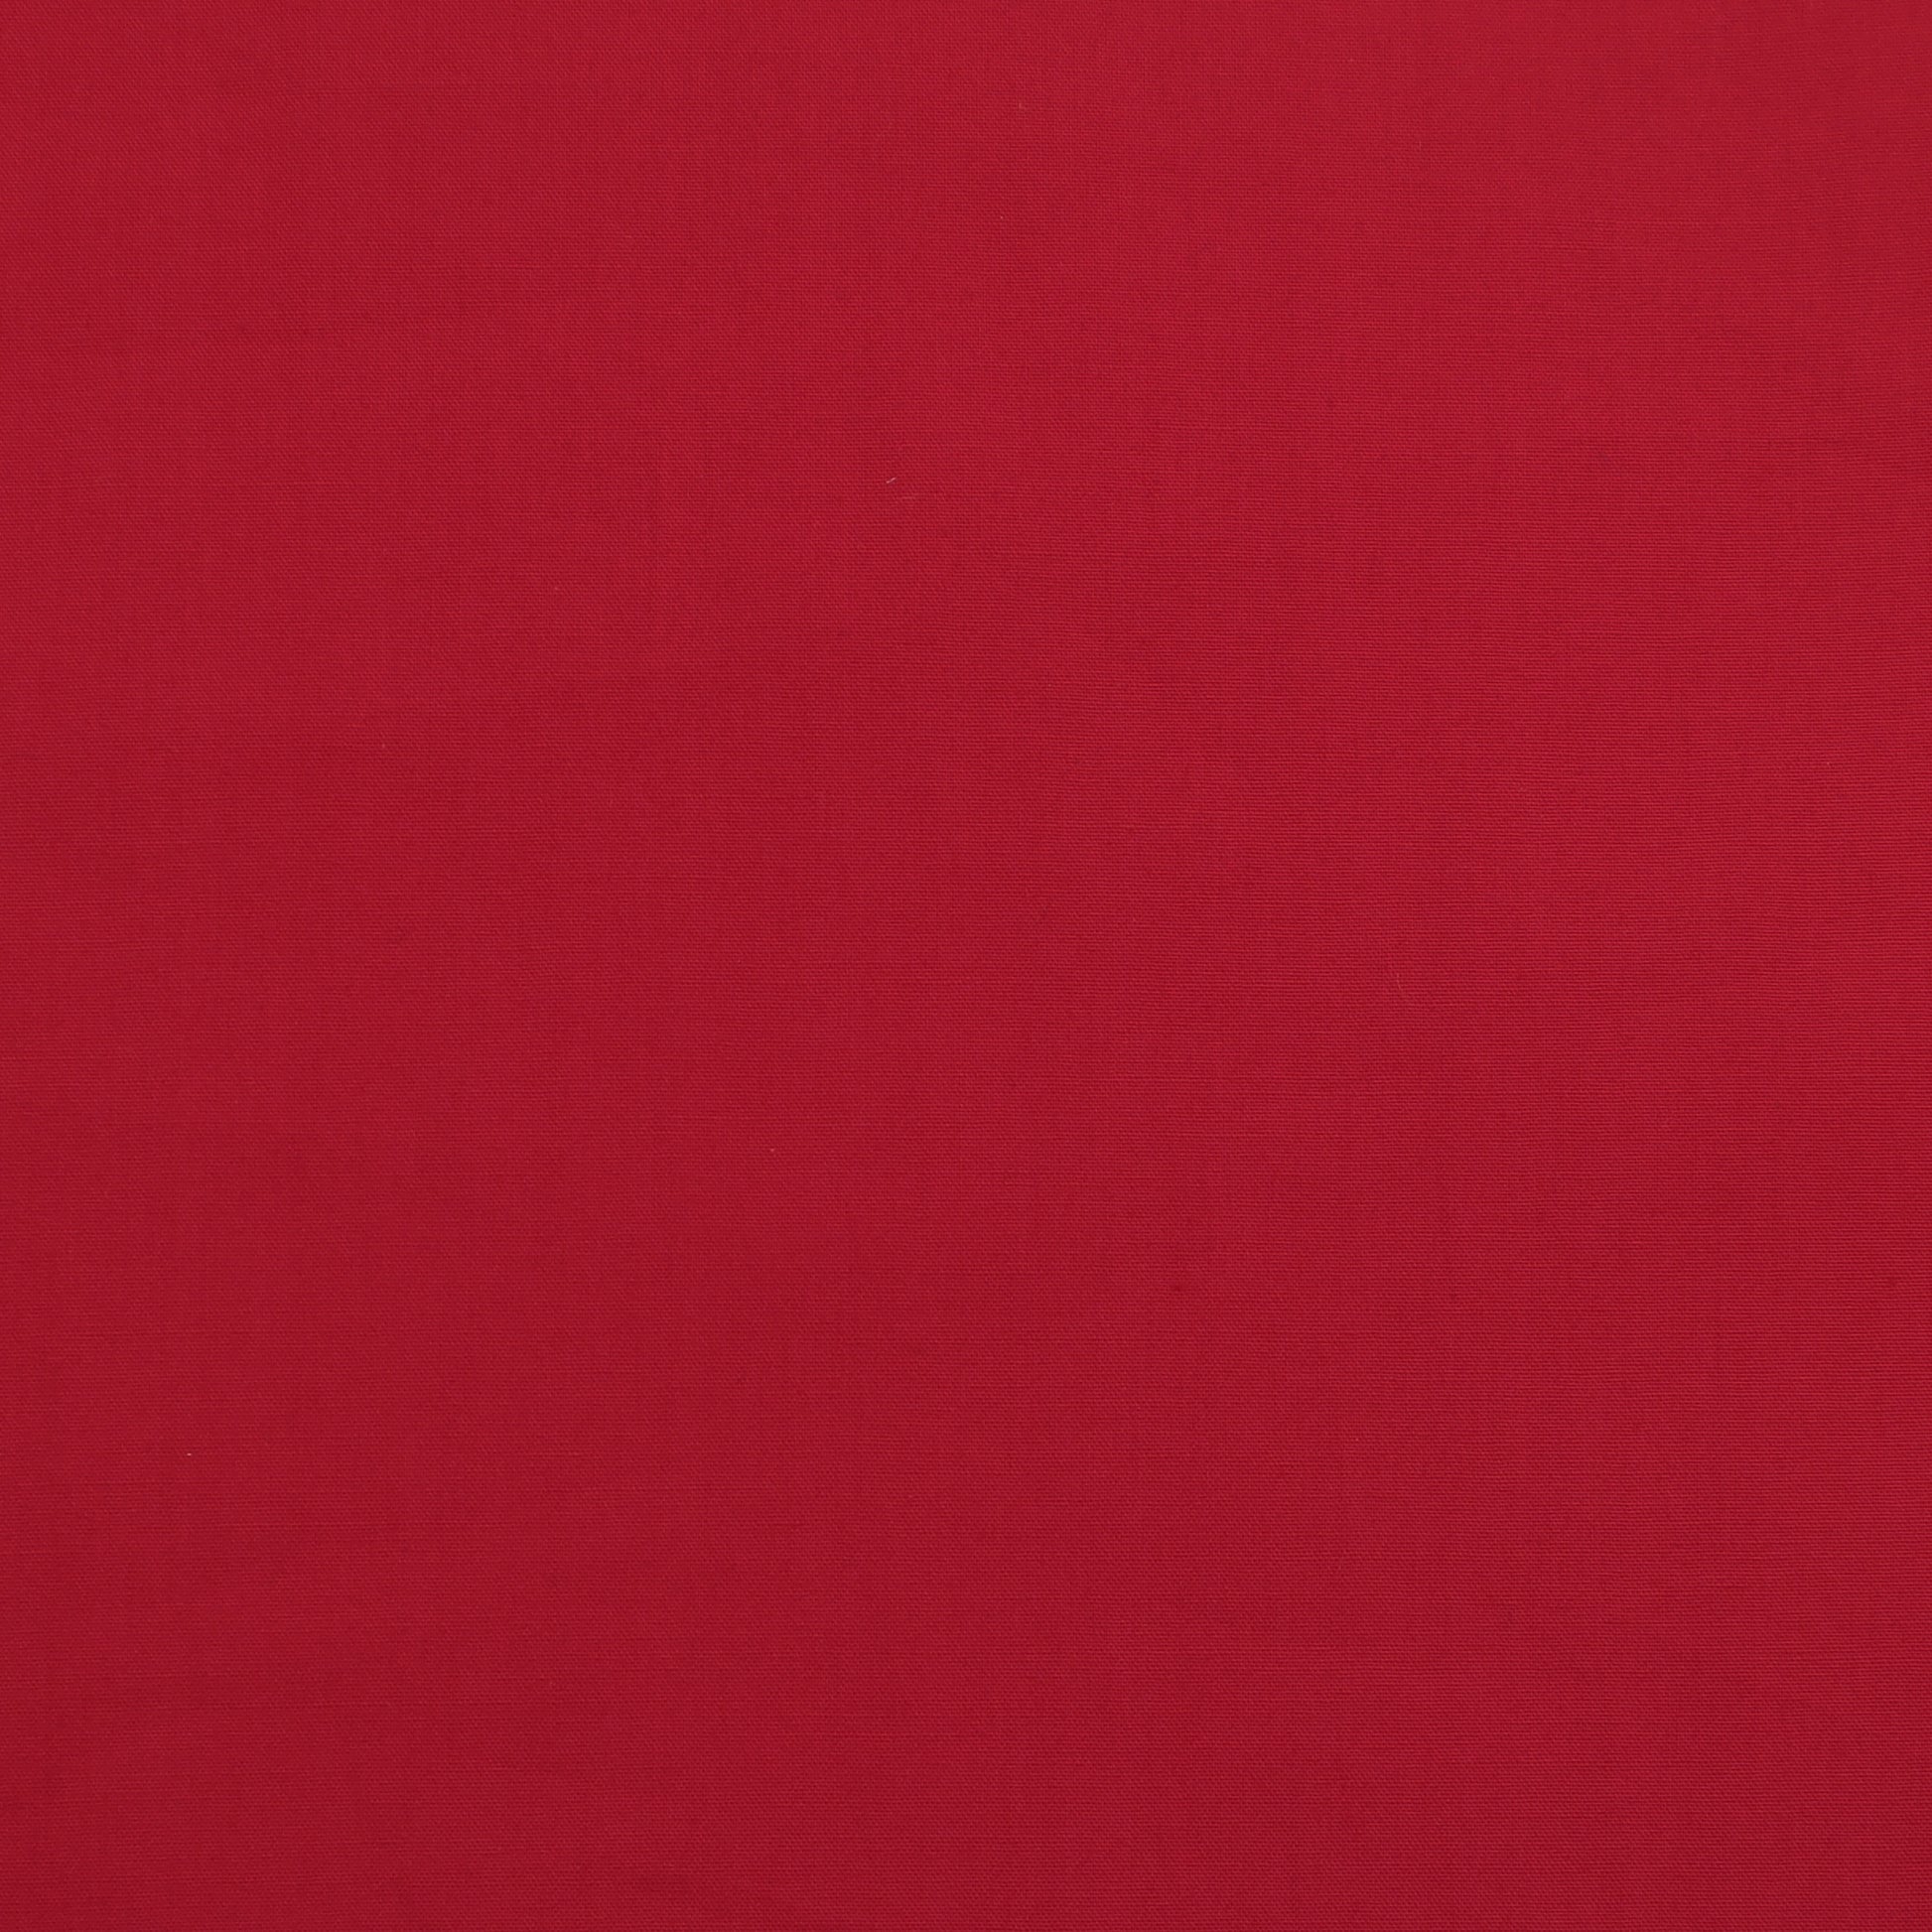 Lightweight Poplin in Scarlet (Red)